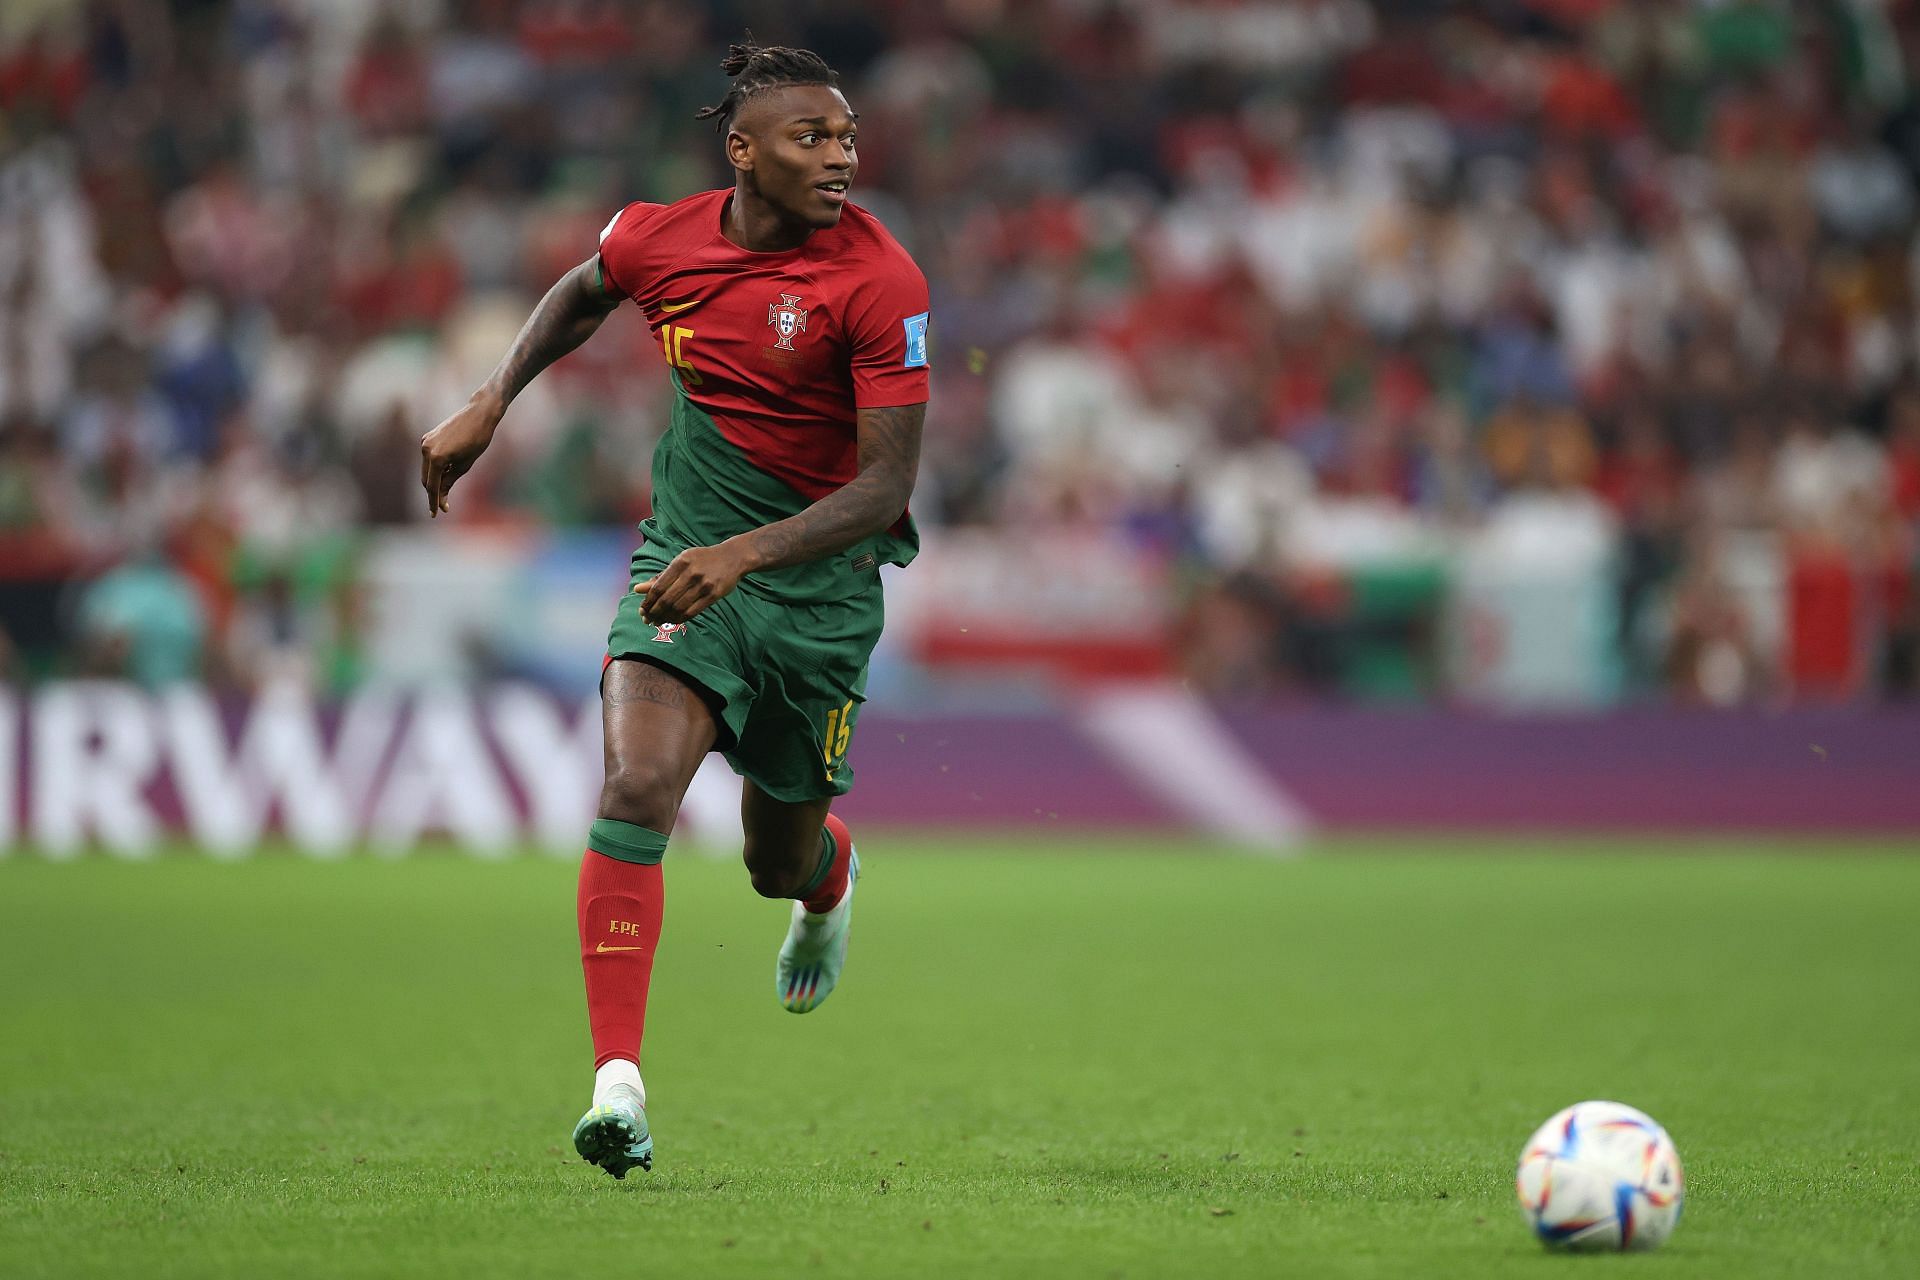 Portugal - Switzerland: Round of 16 - Qatar World Cup 2022